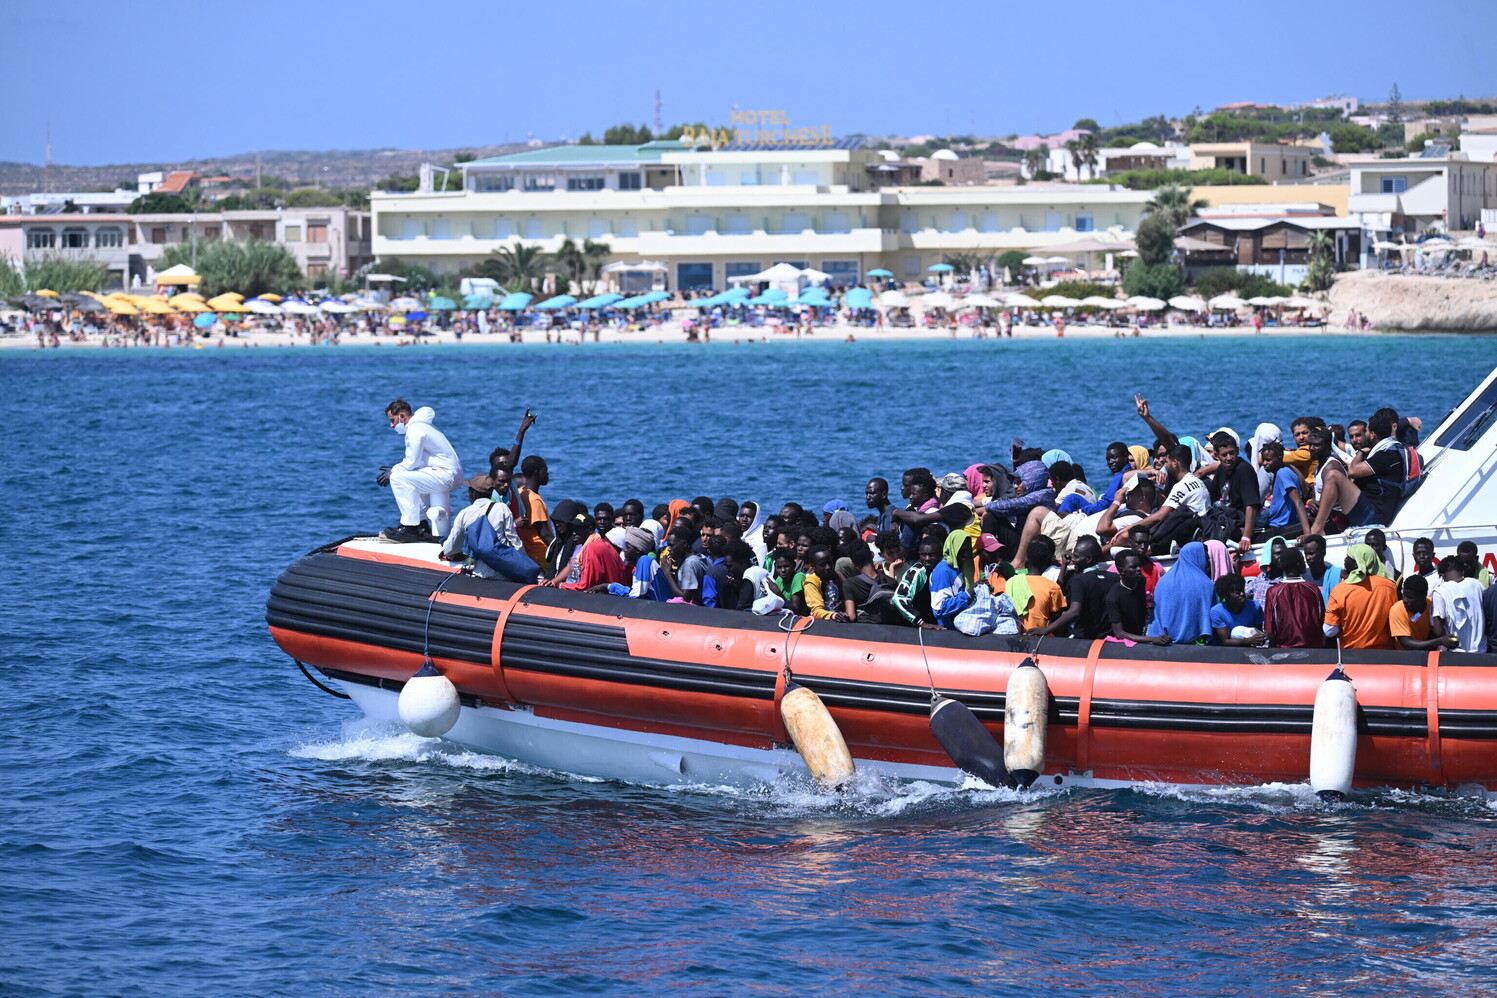 migranti, altri sbarchi a lampedusa: quasi 500 arrivi in 24 ore